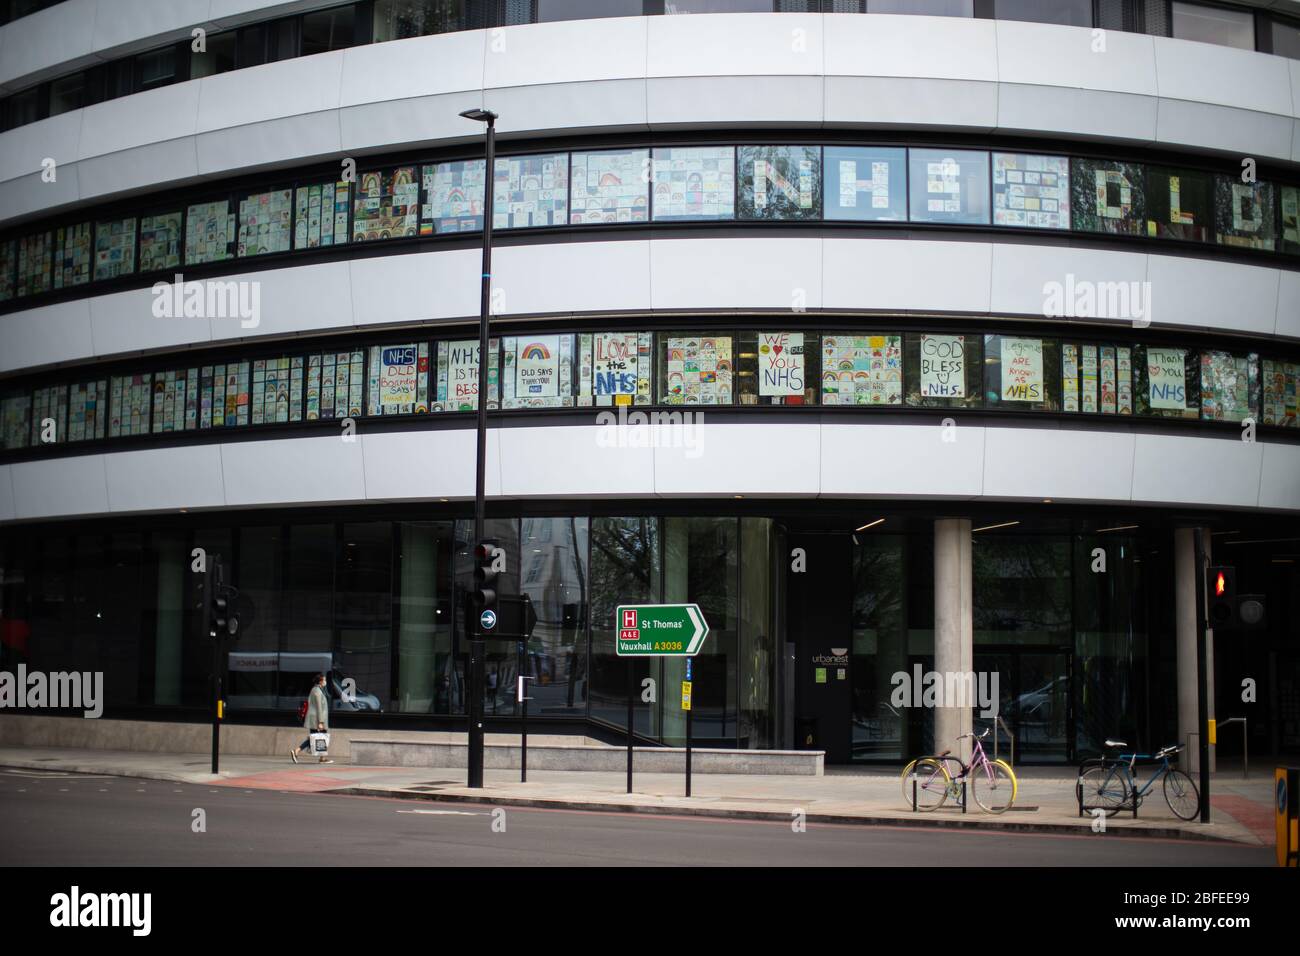 Regenbogenzeichnungen im Fenster des DLD College, London, während Großbritannien weiterhin in der Sperrungen ist, um die Ausbreitung des Coronavirus einzudämmen. Stockfoto